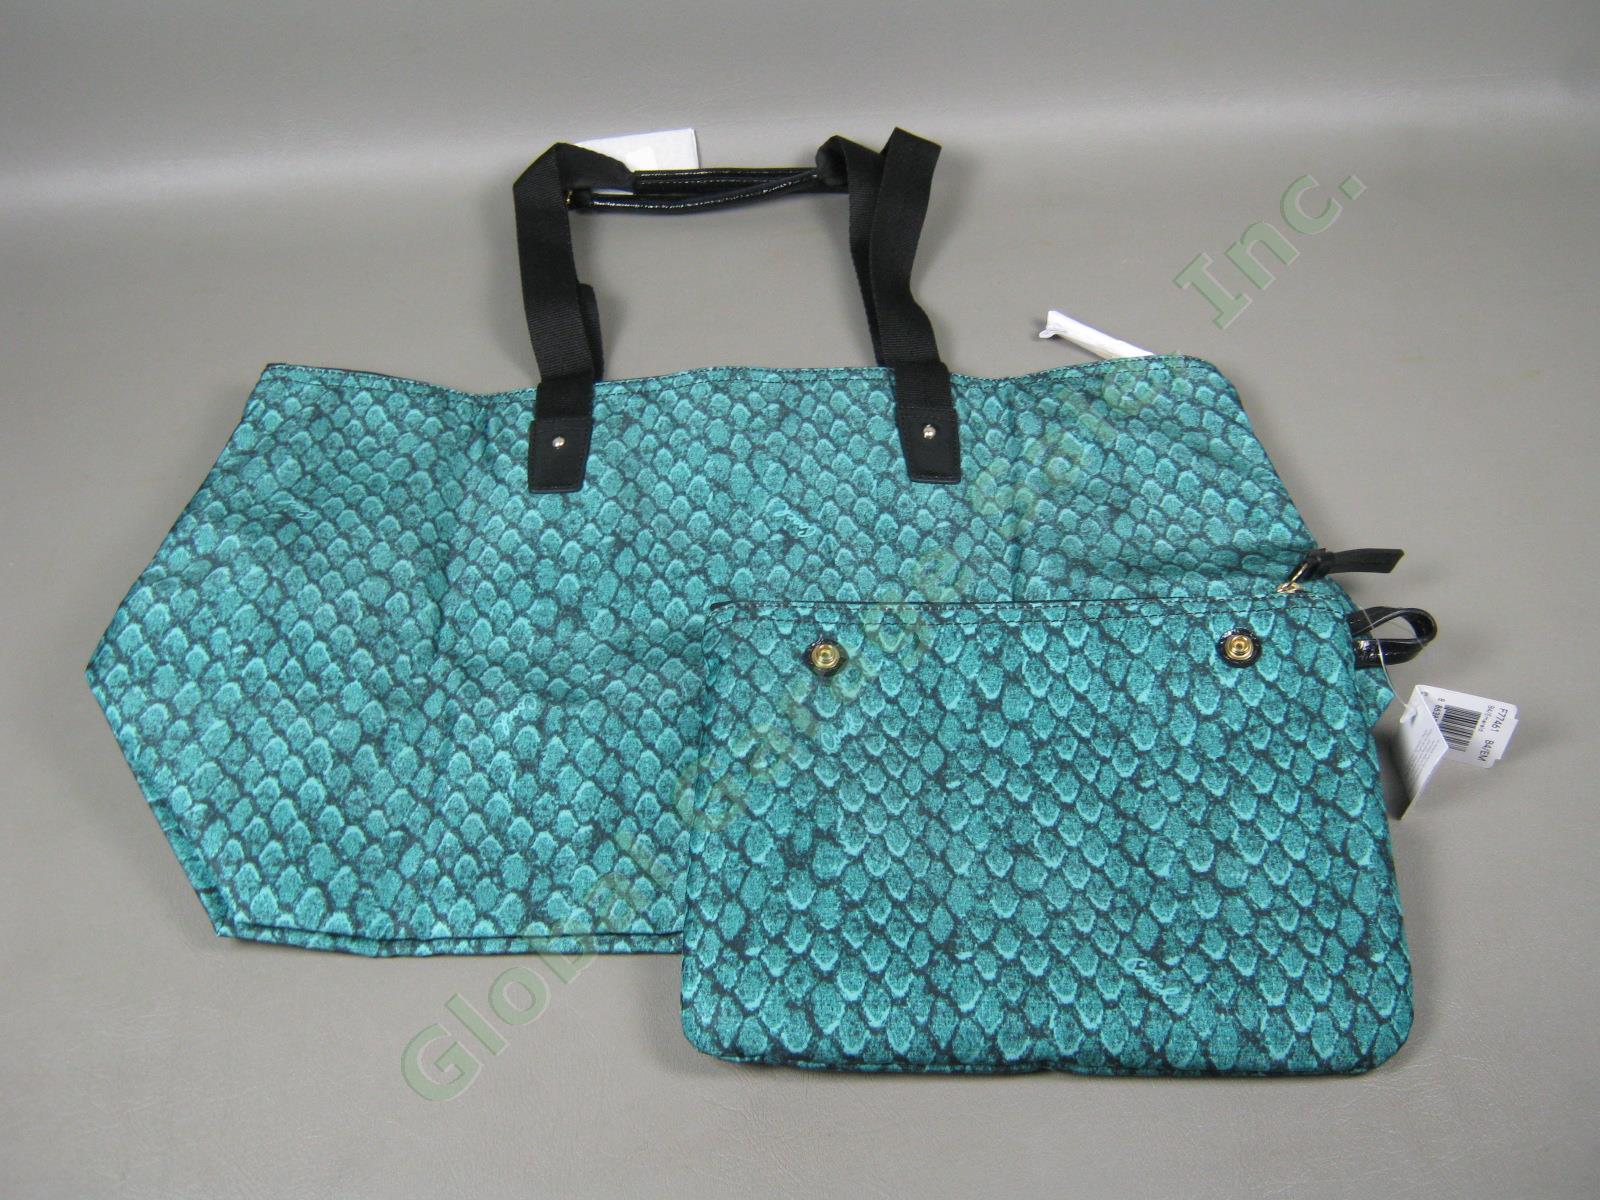 NWT Coach Emerald Getaway Snake Print Weekender Packable Travel Tote Bag $148 NR 1